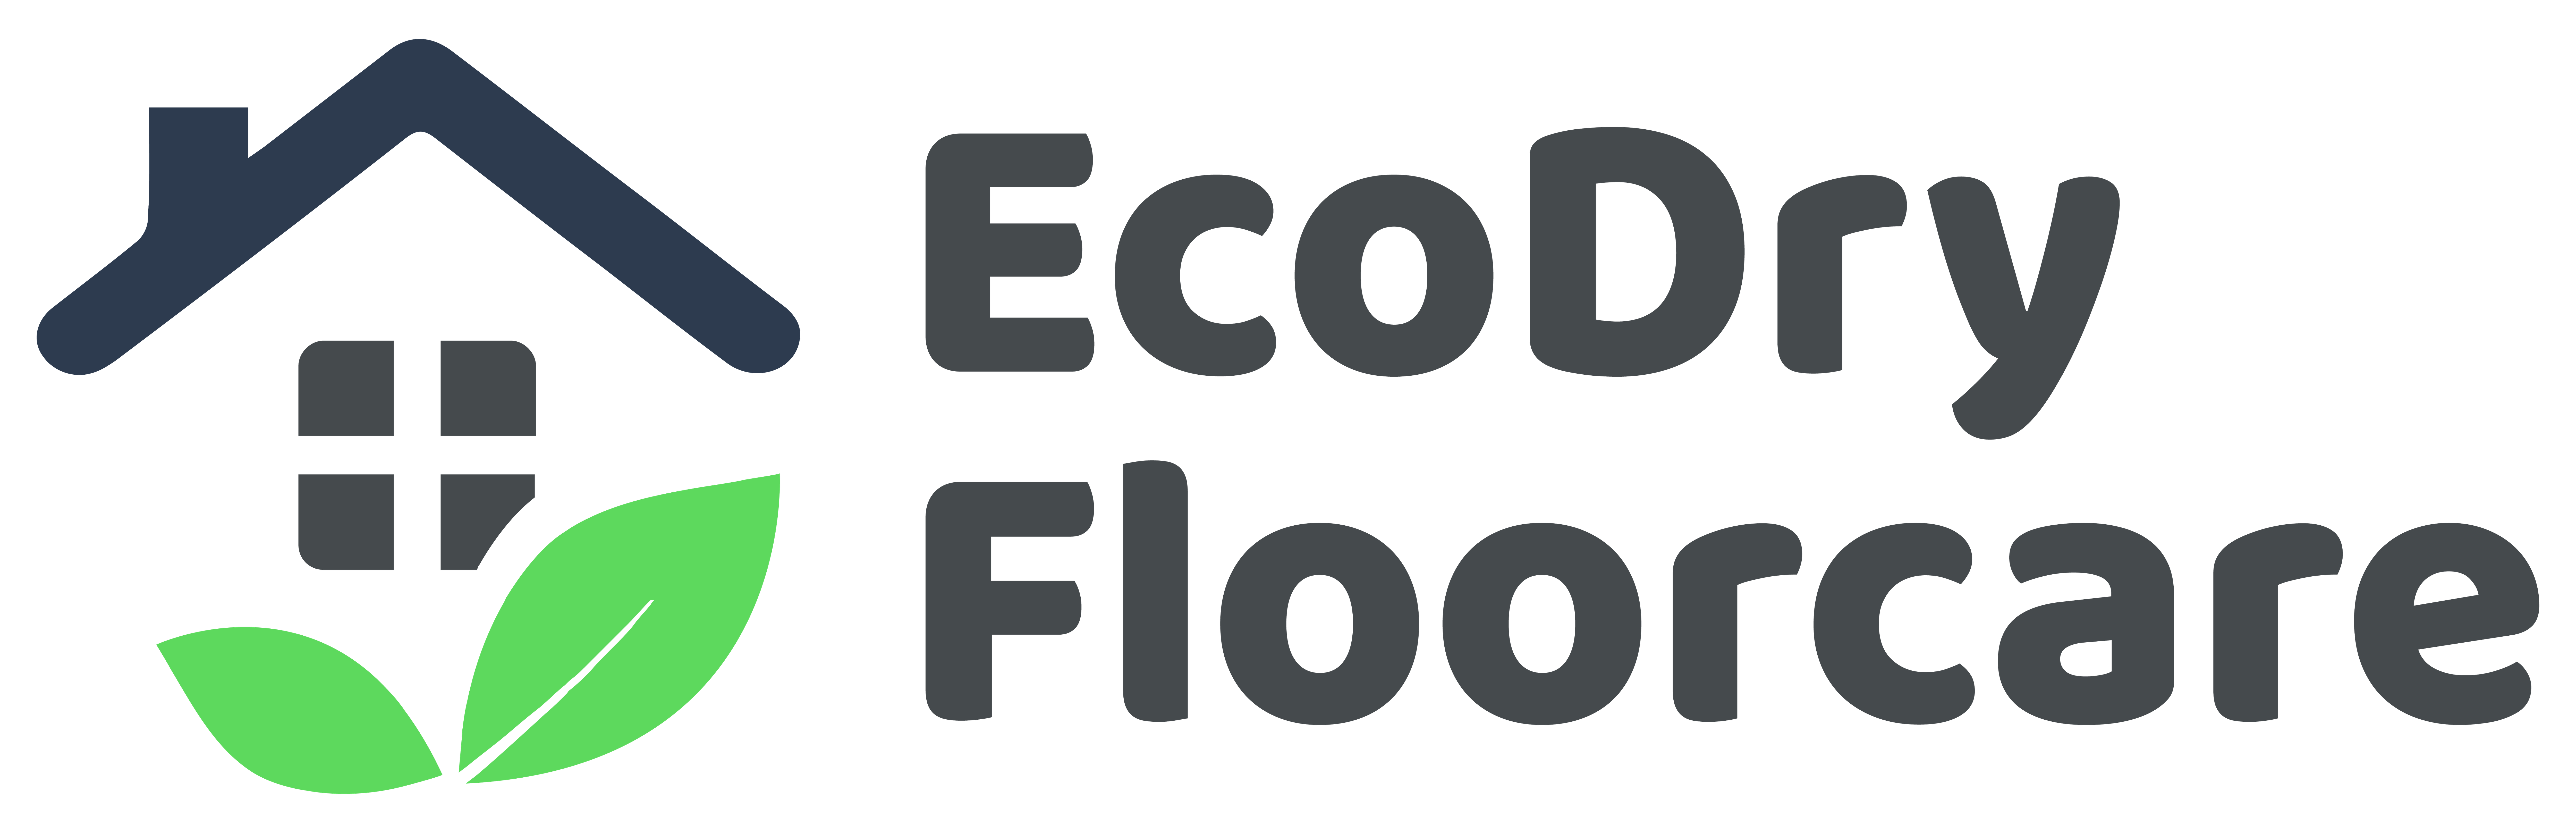 EcoDry Floorcare